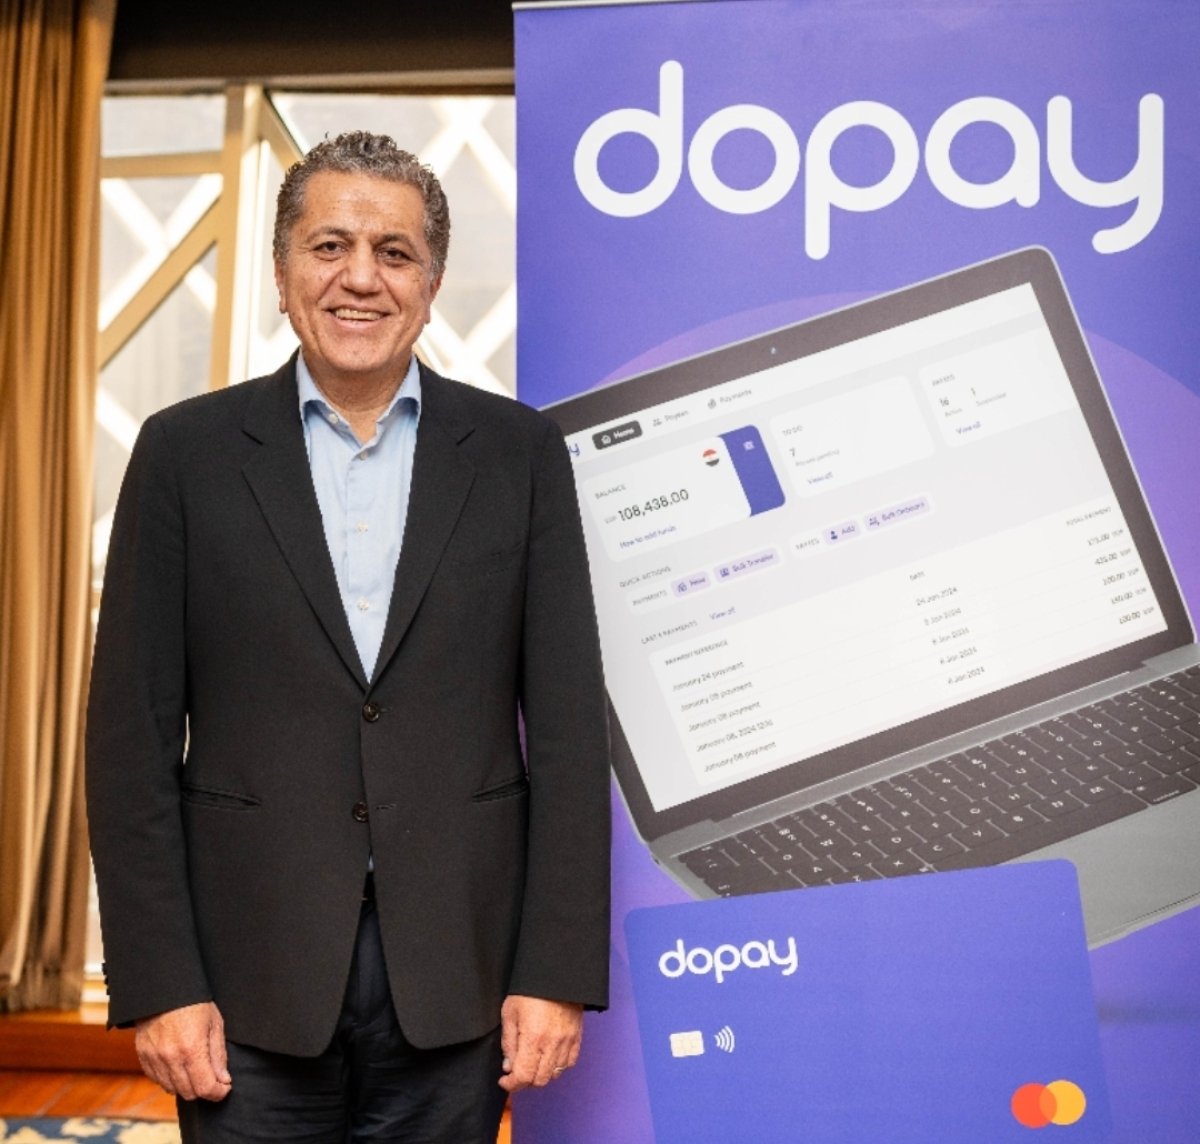 dopay: تعيين أحمد ناصف كرئيس تنفيذي للعمليات التشغيلية والمدير العام لريادة التحول إلى المدفوعات الرقمية والشمول المالي بمصر